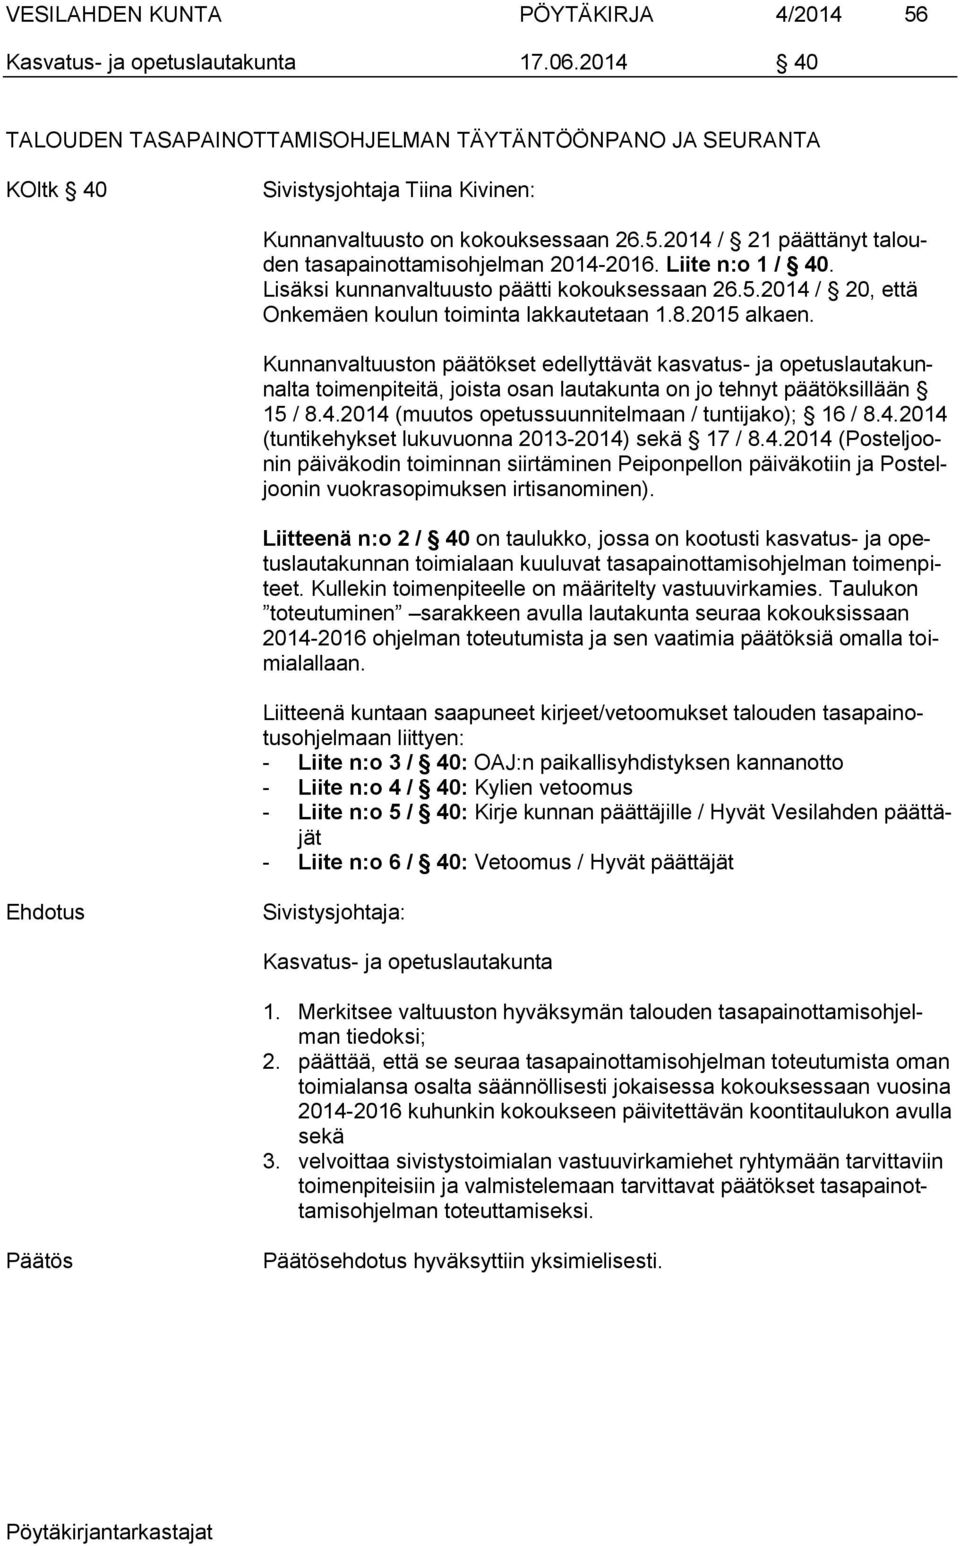 2014 / 21 päättänyt talouden tasapainottamisohjelman 2014-2016. Liite n:o 1 / 40. Lisäksi kunnanvaltuusto päätti kokouksessaan 26.5.2014 / 20, että Onkemäen koulun toiminta lakkautetaan 1.8.